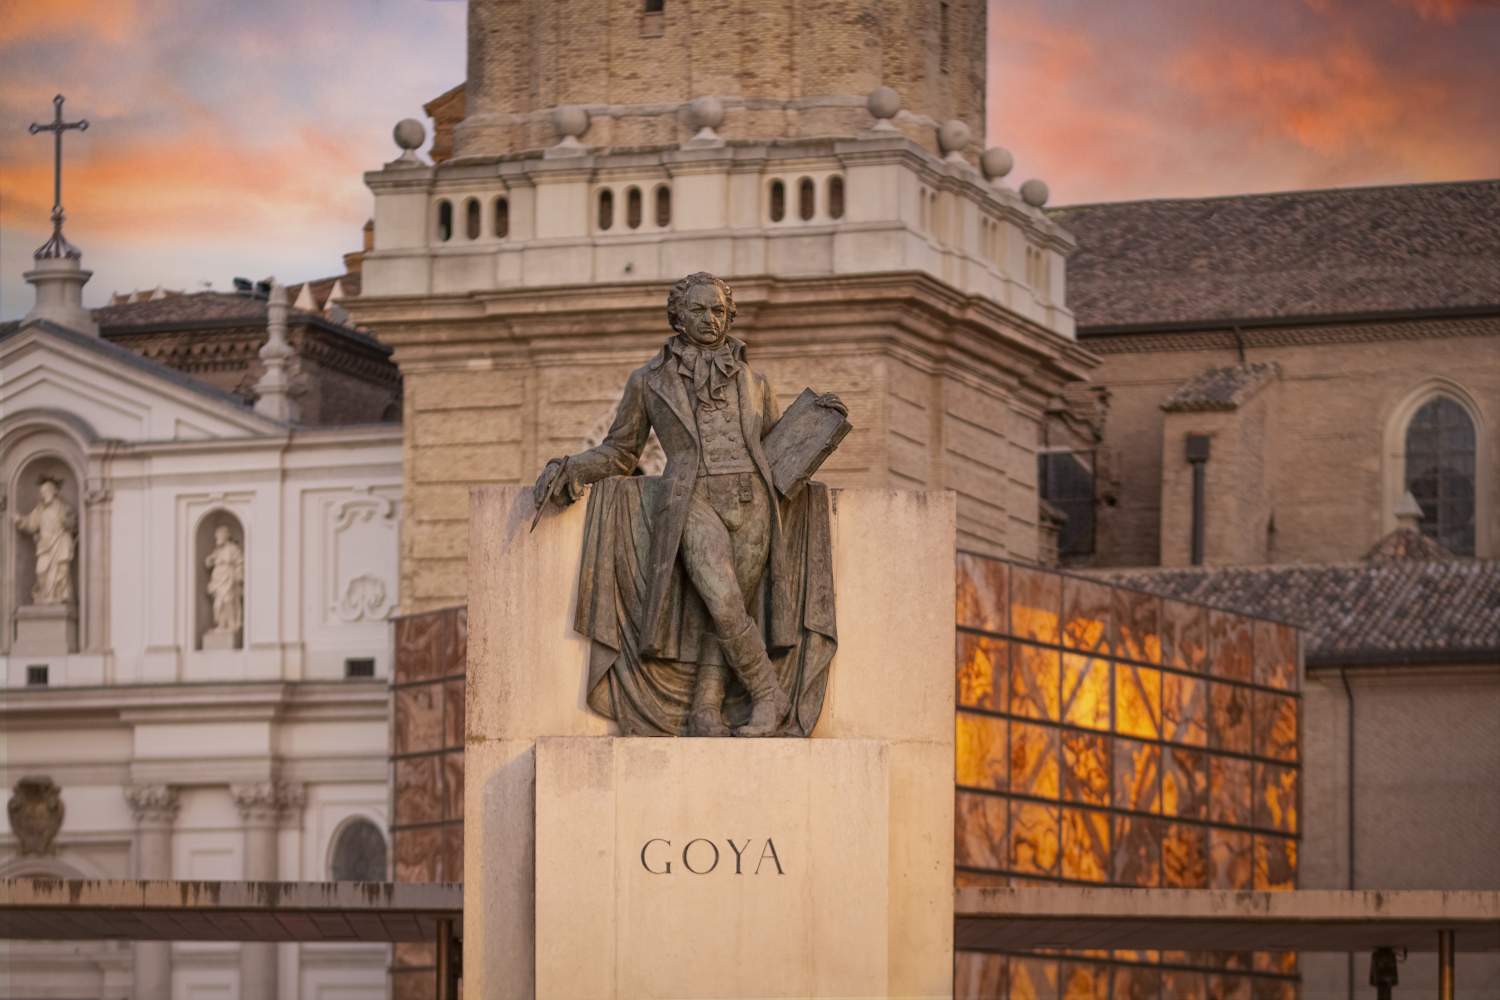 En Aragón tras las huellas de Goya, de Fuendetodos a Zaragoza 